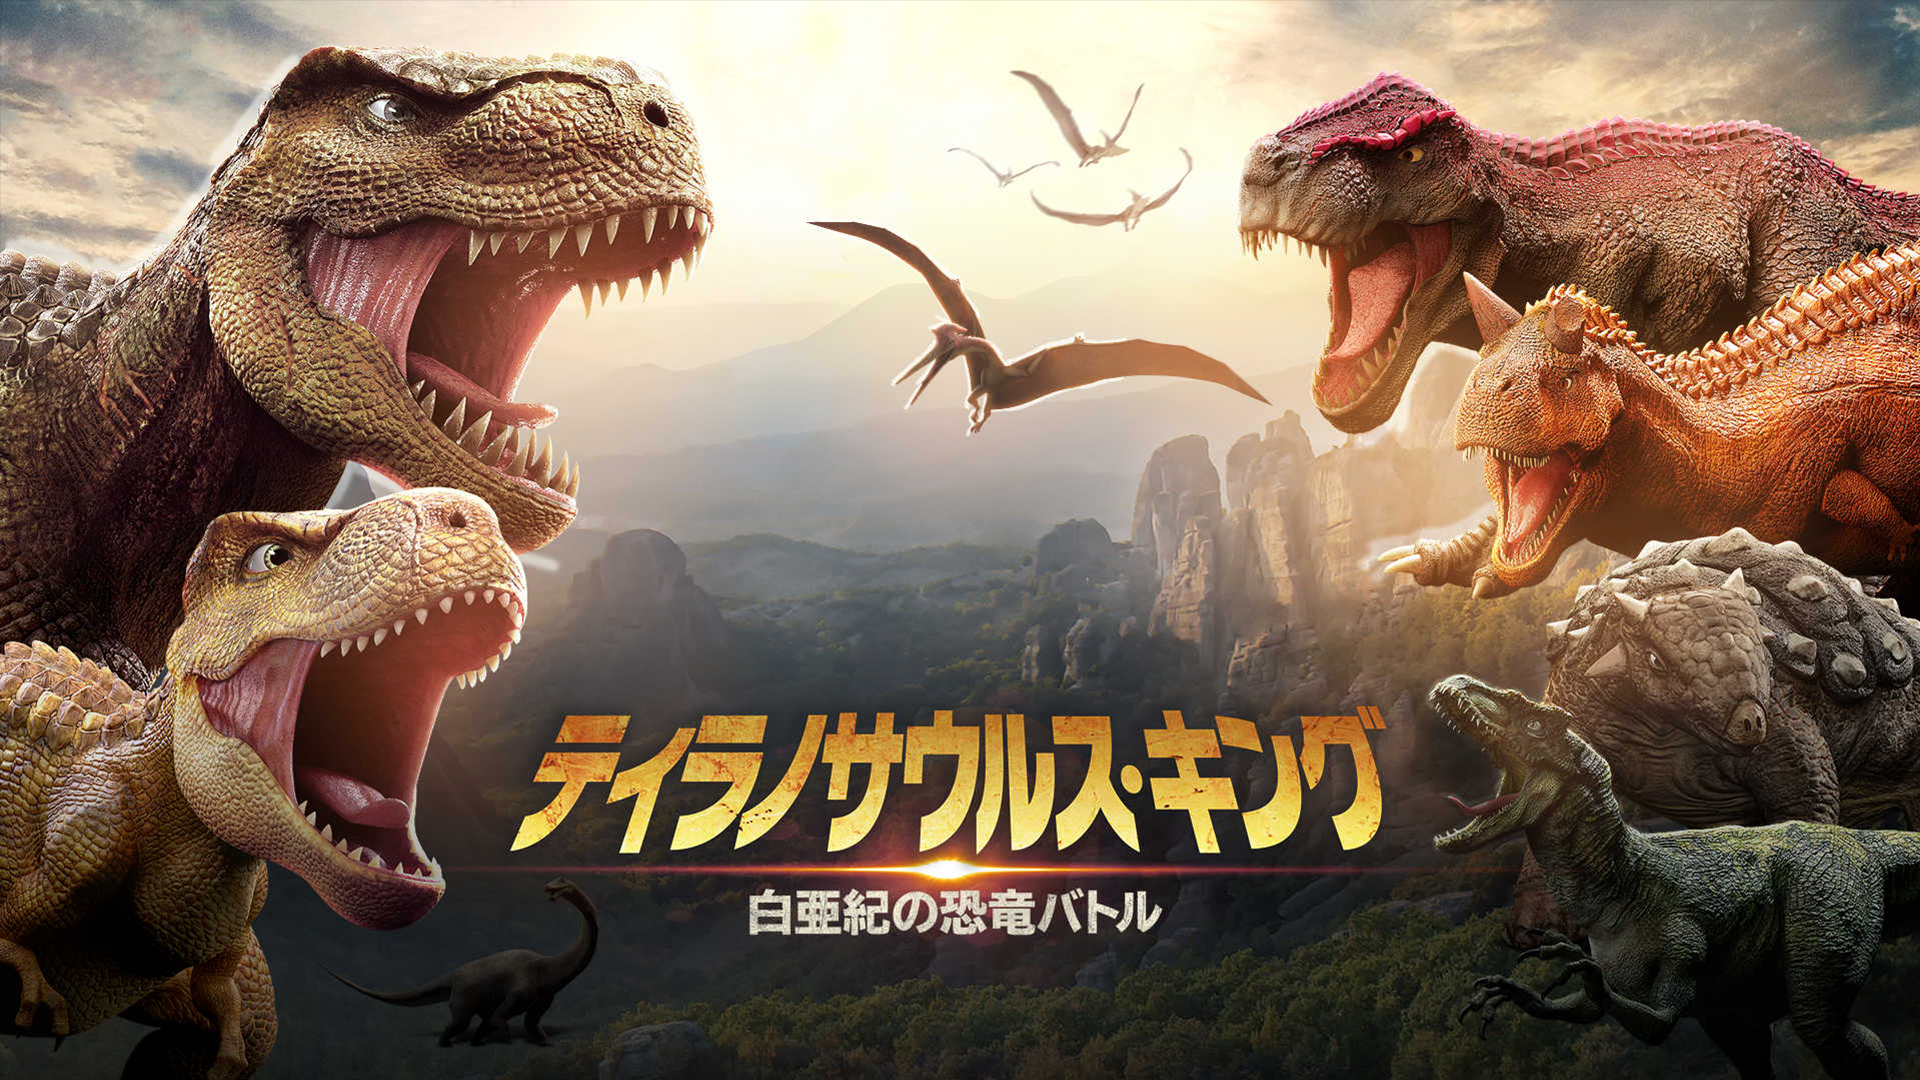 ティラノサウルス・キング 白亜紀の恐竜バトル(洋画 / 2022) - 動画配信 | U-NEXT 31日間無料トライアル